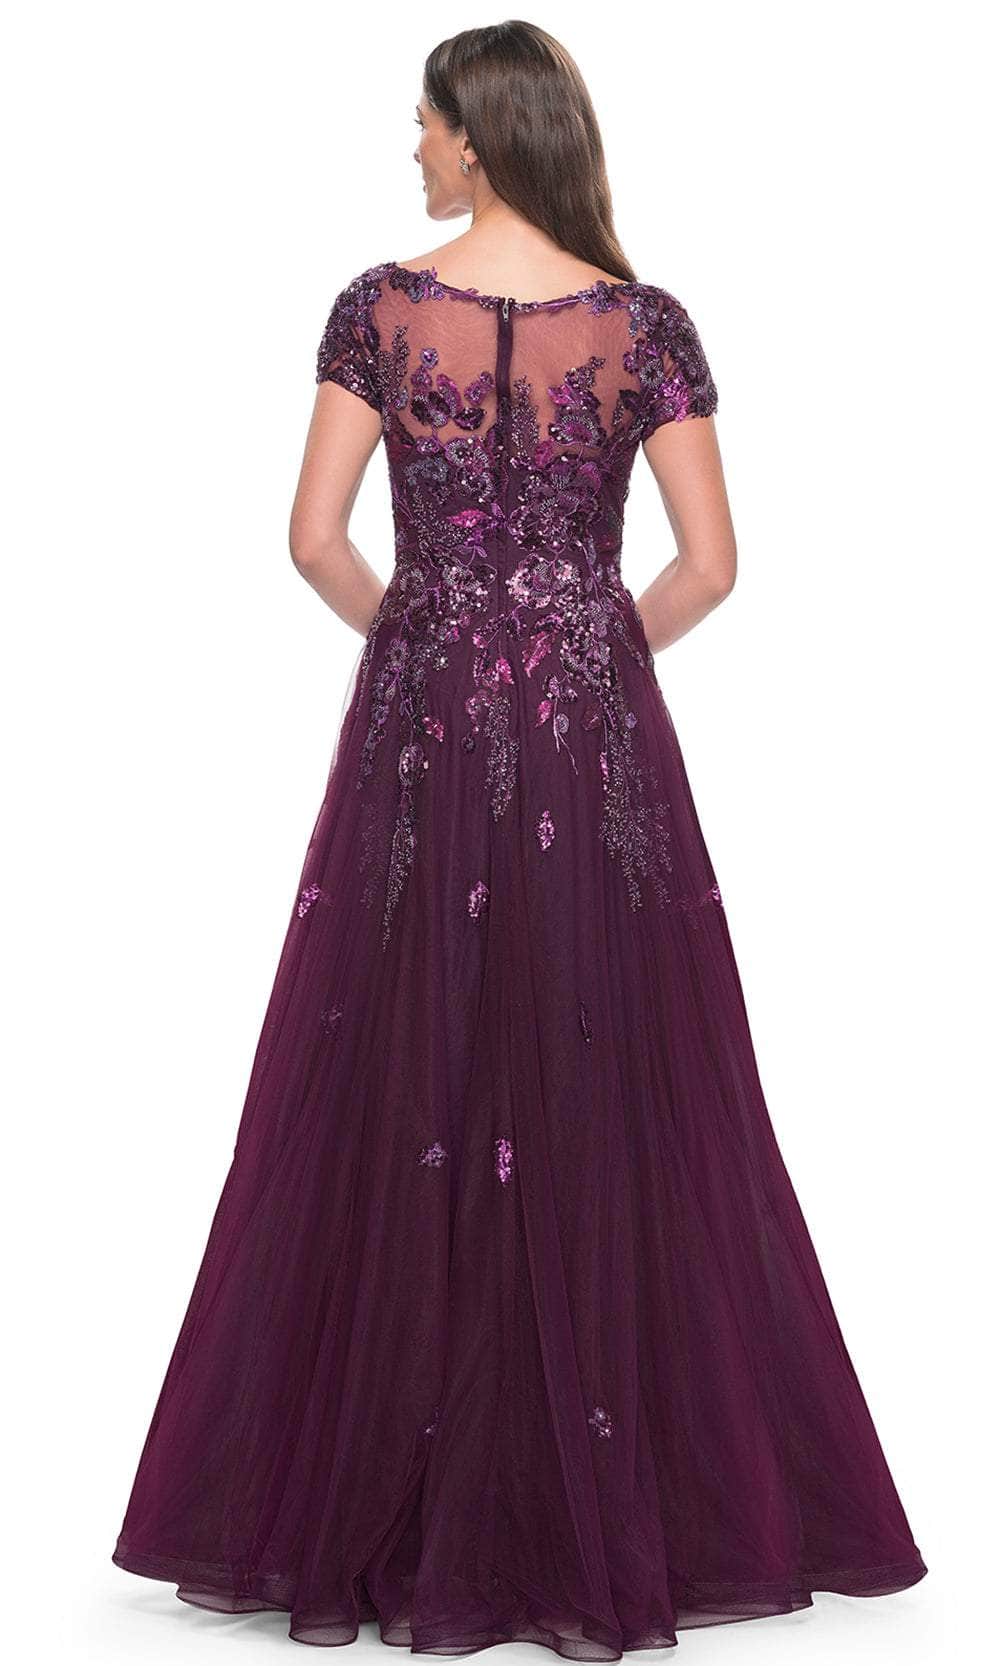 La Femme 31712 - Short Sleeve Floral Lace Applique Dress Evening Dresses